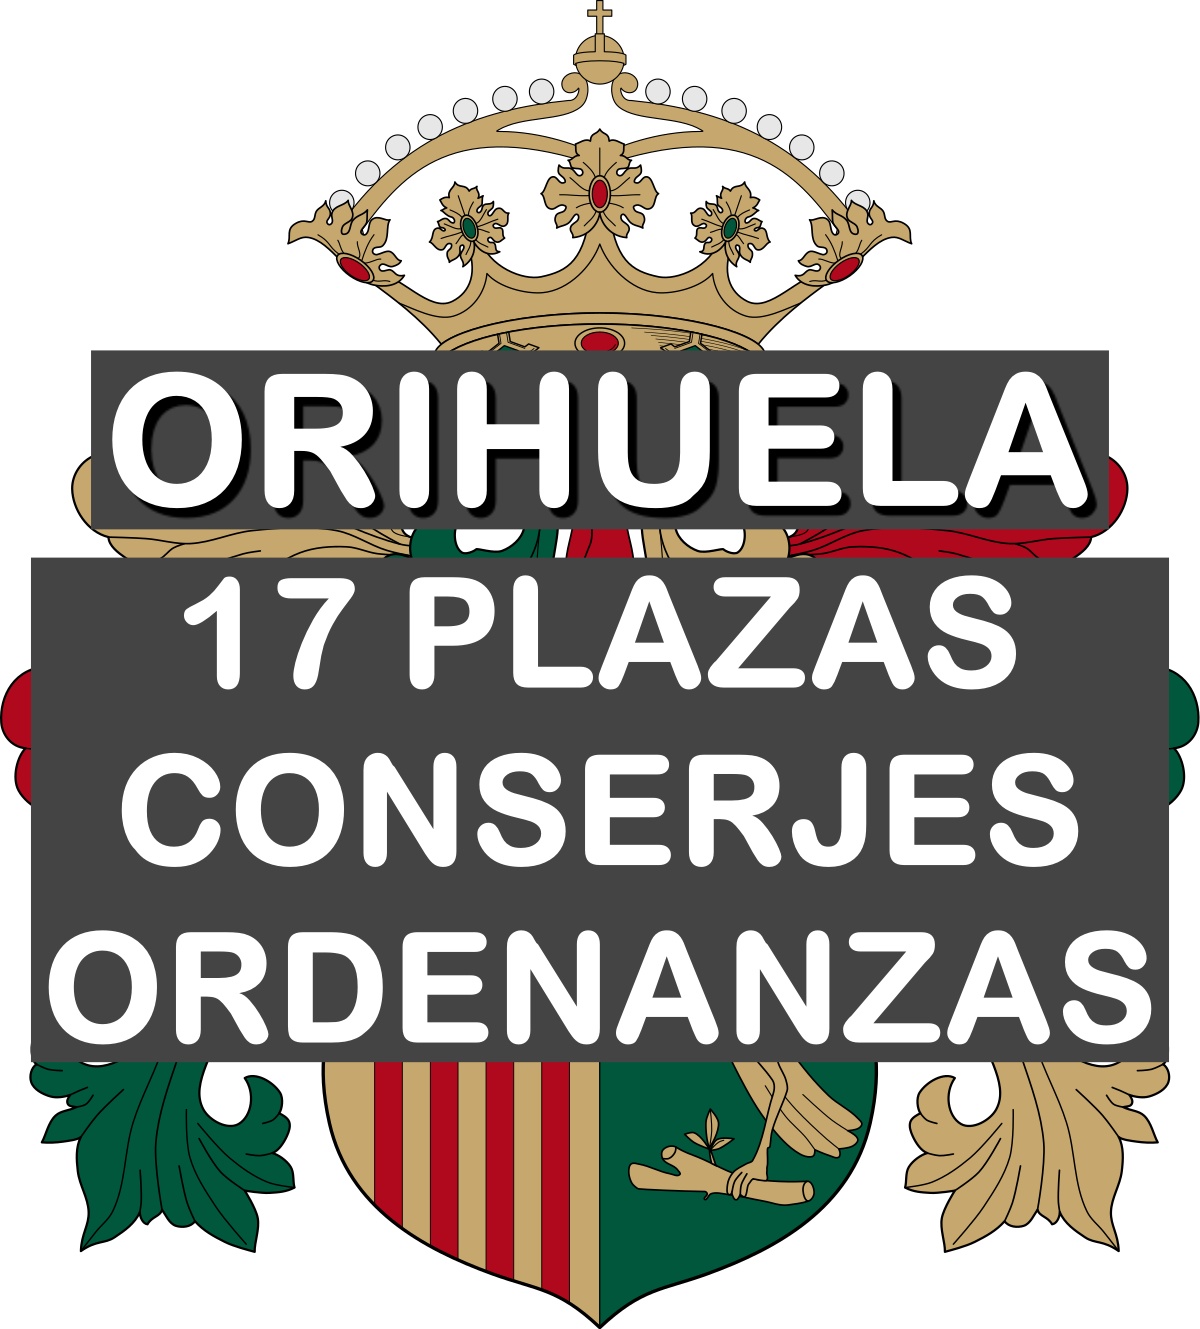 17 plazas conserjes y ordenanzas en Orihuela